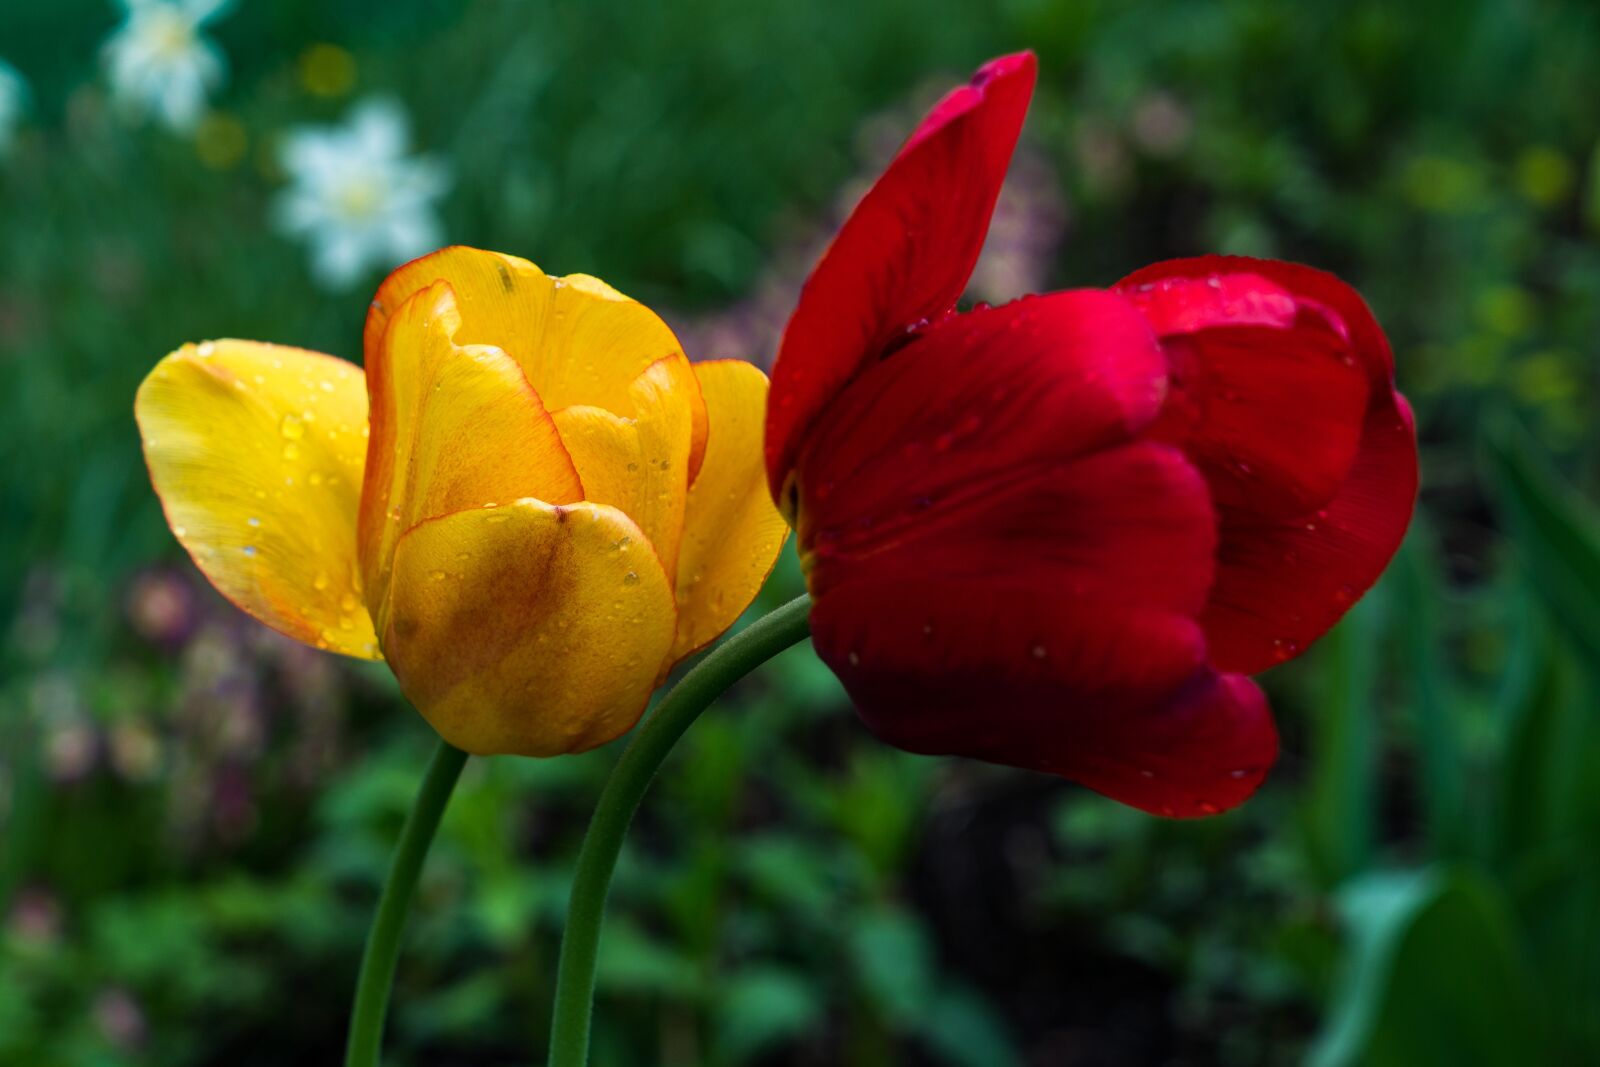 Sony a6300 + Sony Vario Tessar T* FE 24-70mm F4 ZA OSS sample photo. Tulip, flower, petals photography